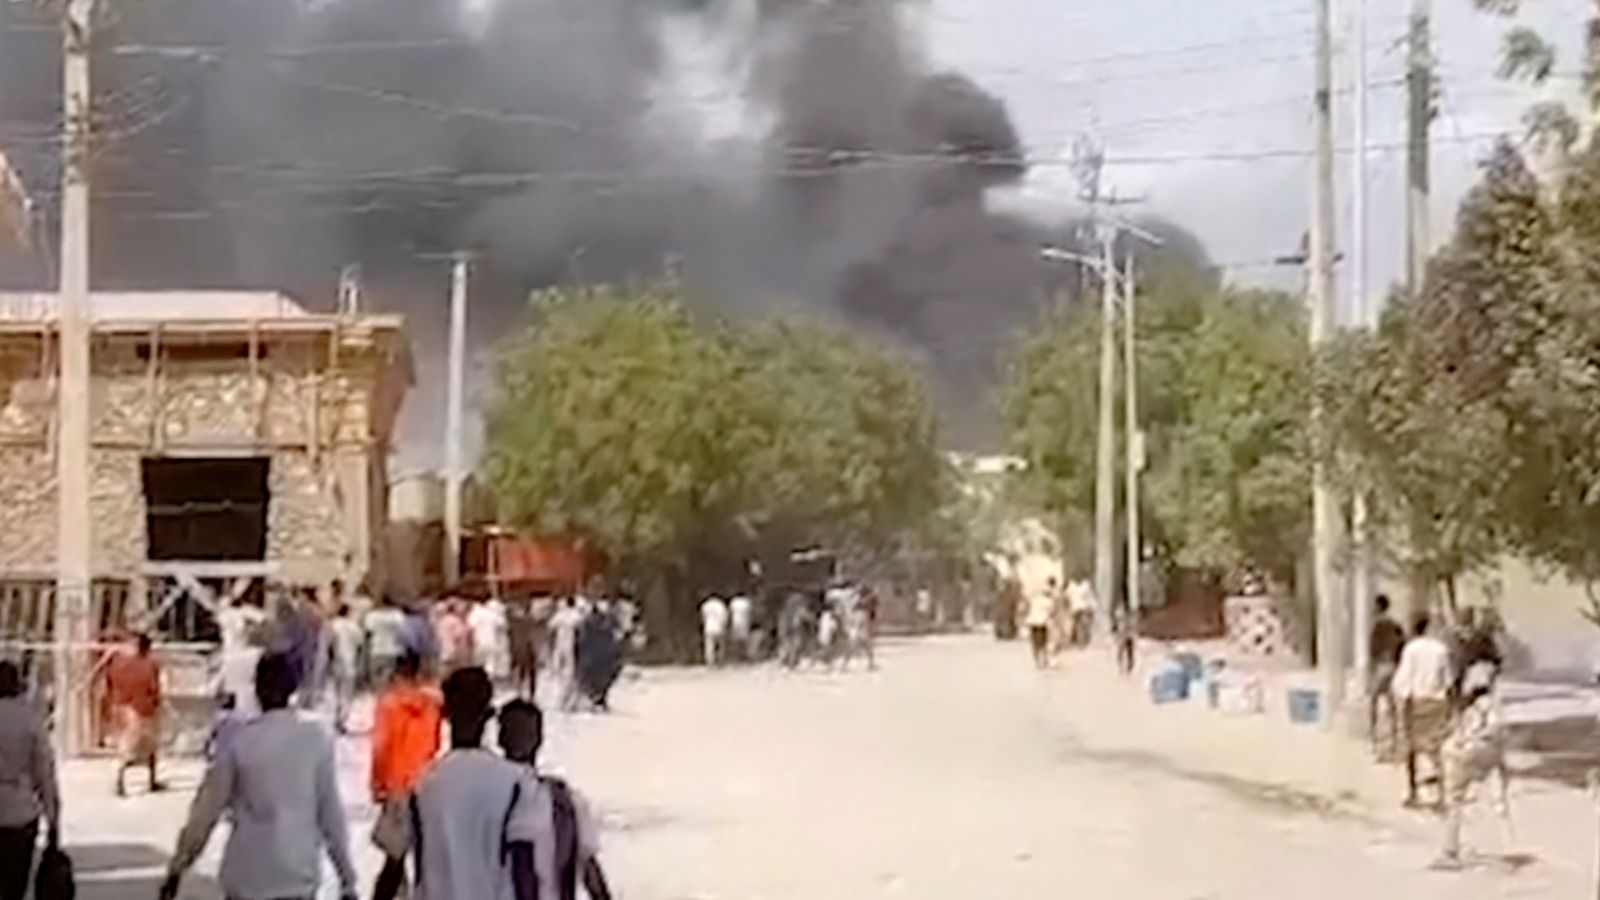 L’attentat contre un camion piégé en Somalie tue 15 personnes et en blesse 40 autres |  Nouvelles du Royaume-Uni